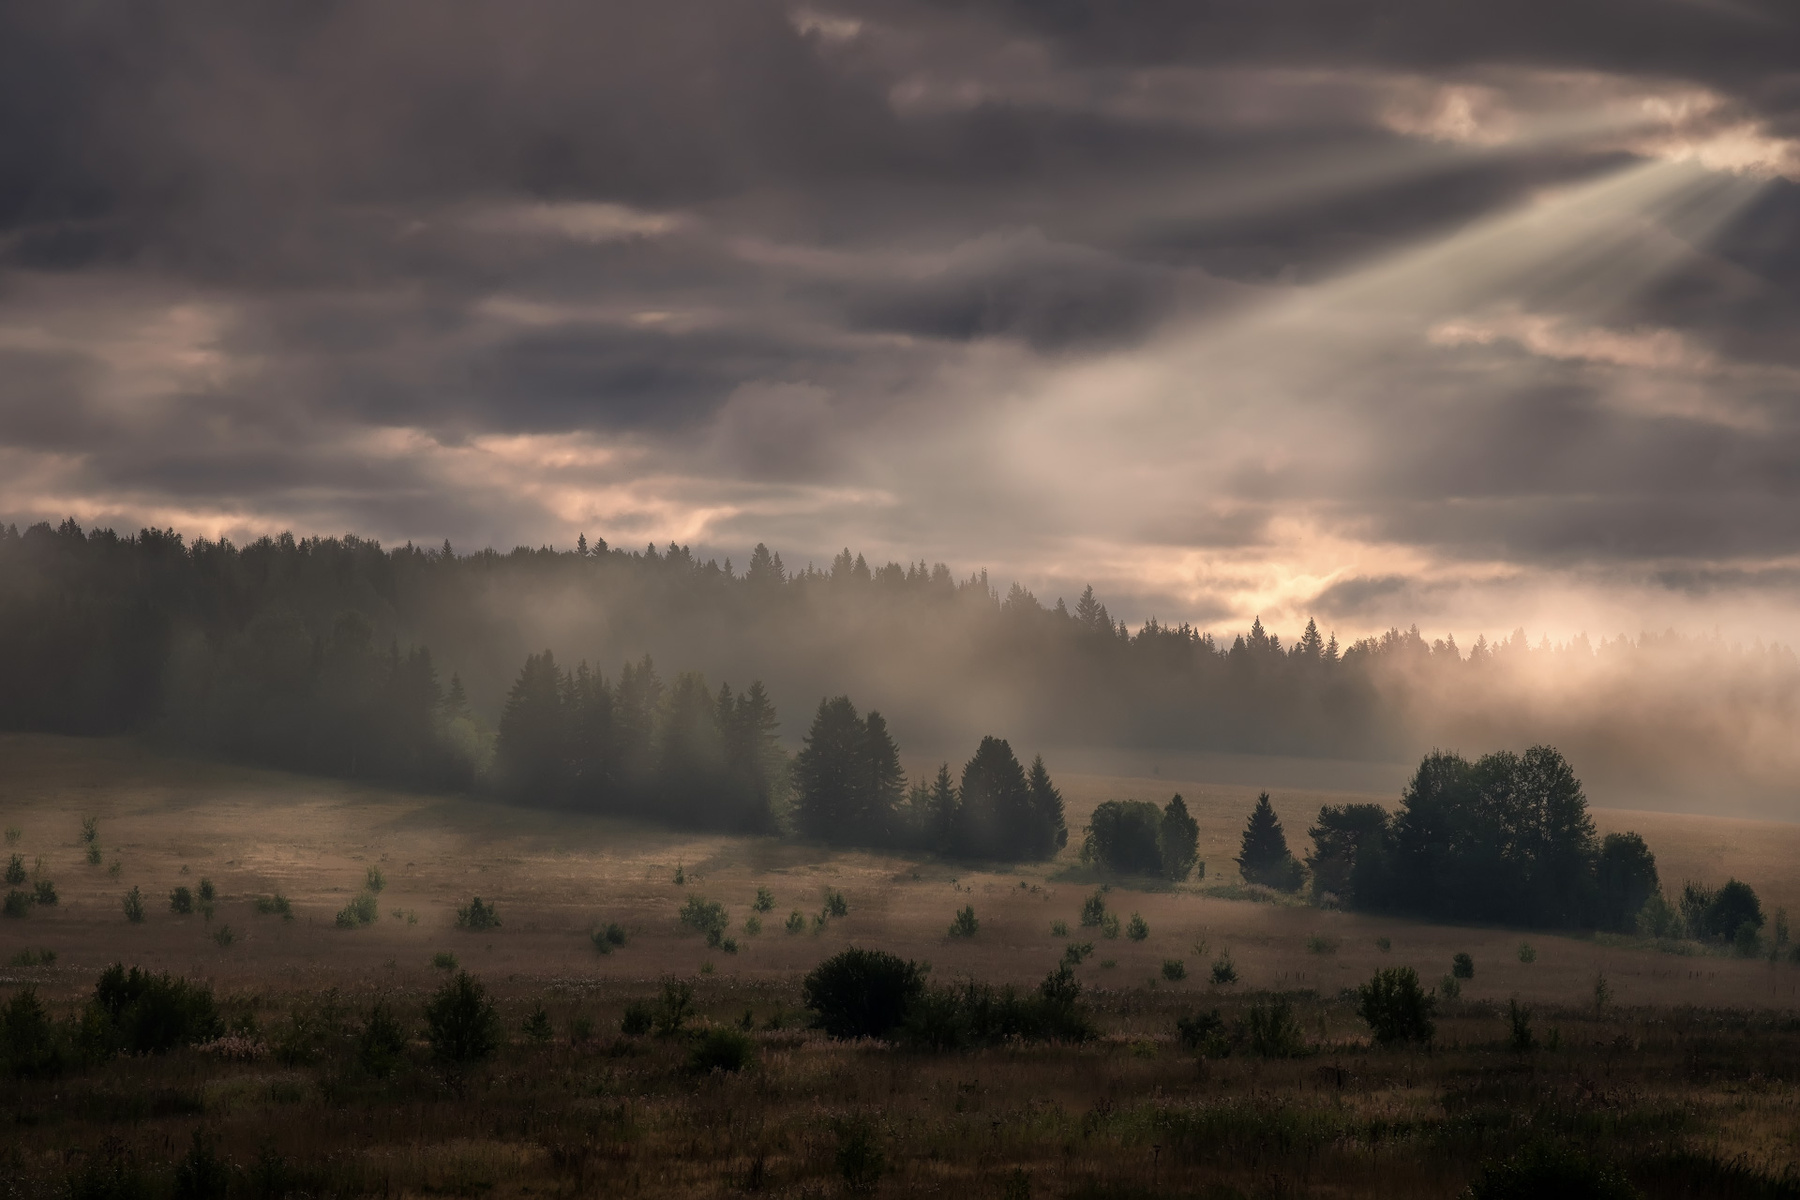 Уральское утро пейзаж перемское пермский край утро облачно луч солнце тайга лес елки поле